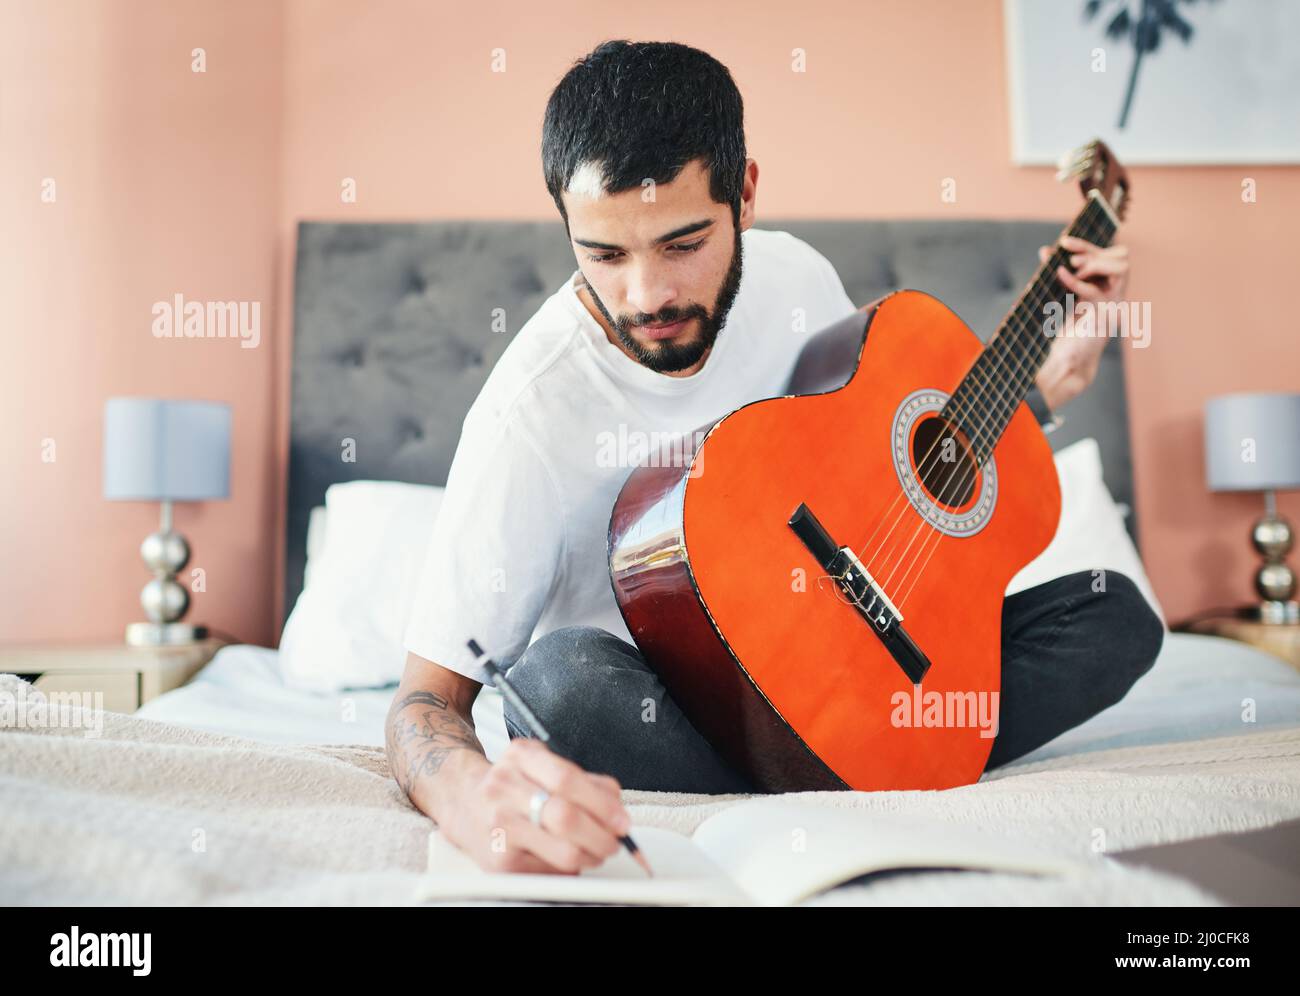 Ich bin mir sicher, dass dies ein Hit werden wird. Aufnahme eines Mannes, der in seinem Notizbuch schreibt, während er zu Hause Gitarre spielt. Stockfoto